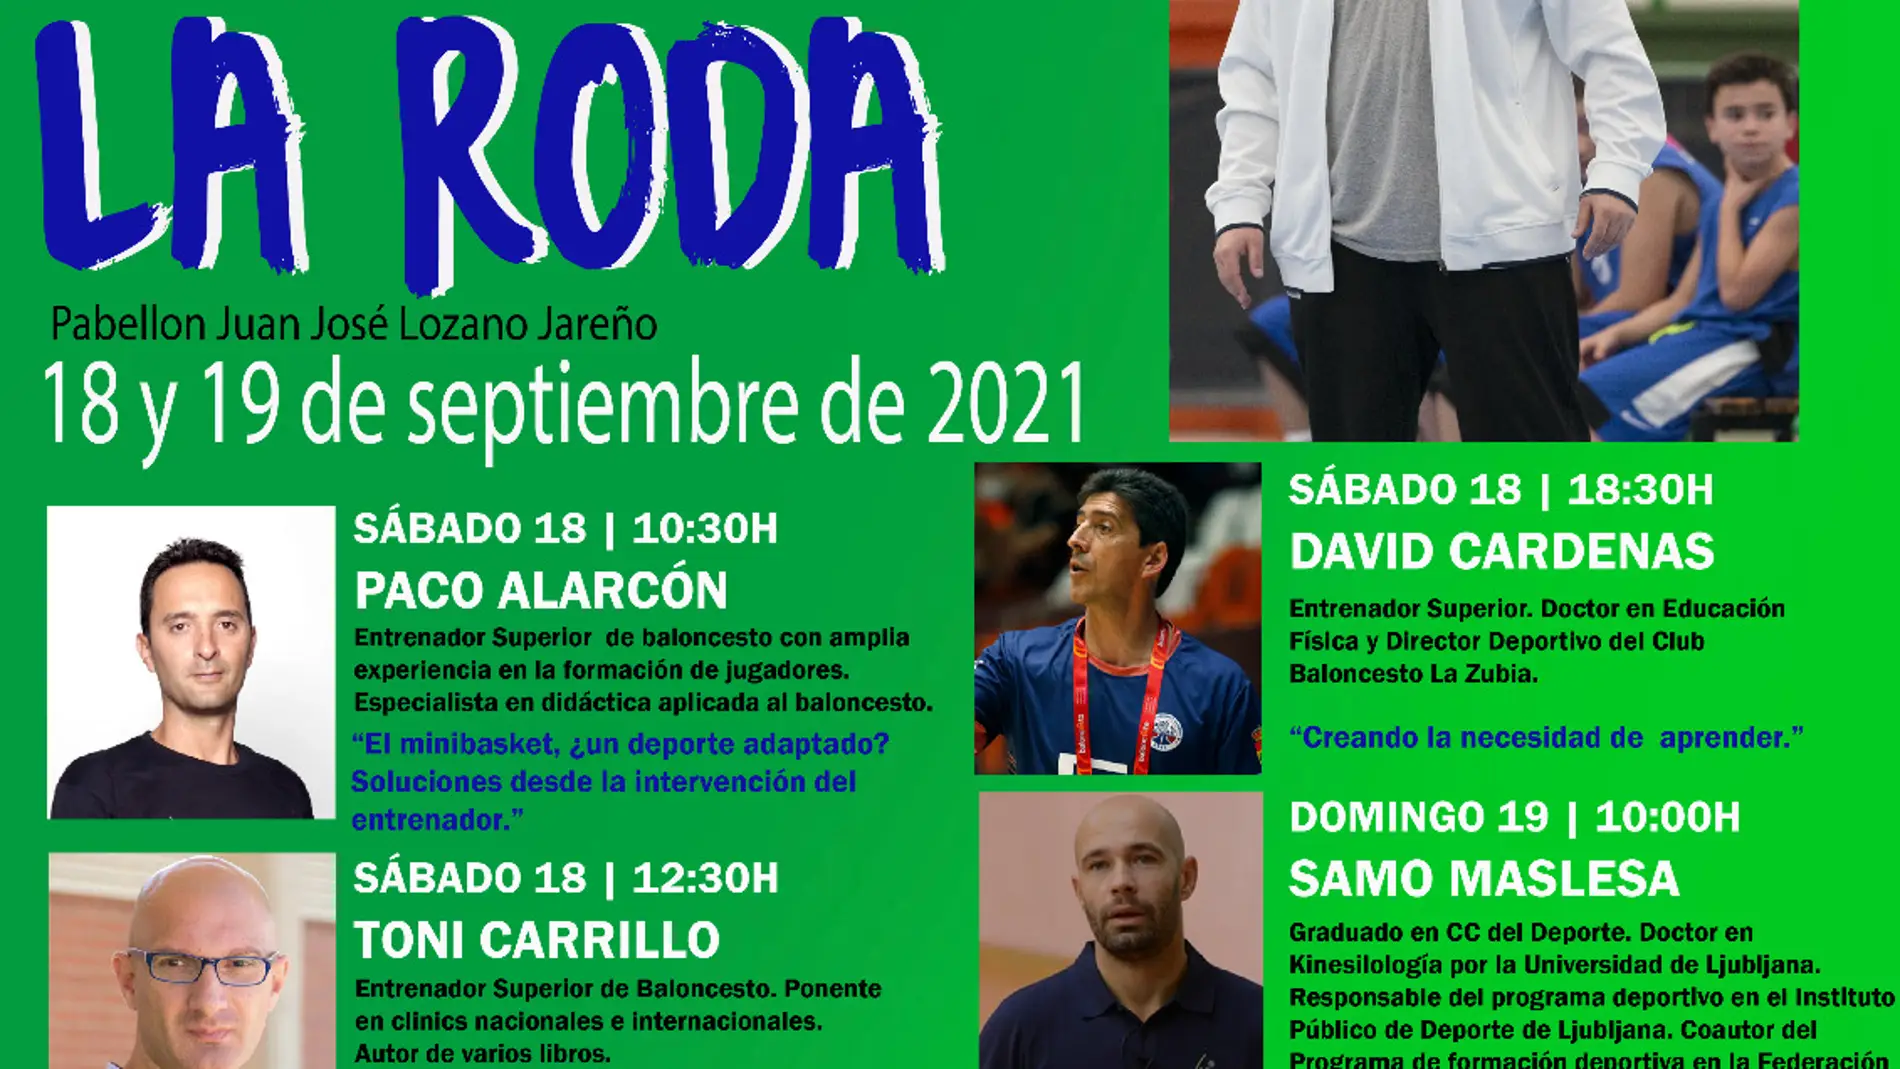 La Roda acoge el II Seminario Internacional de Minibasket "Memorial Fernando Díaz-Ropero"